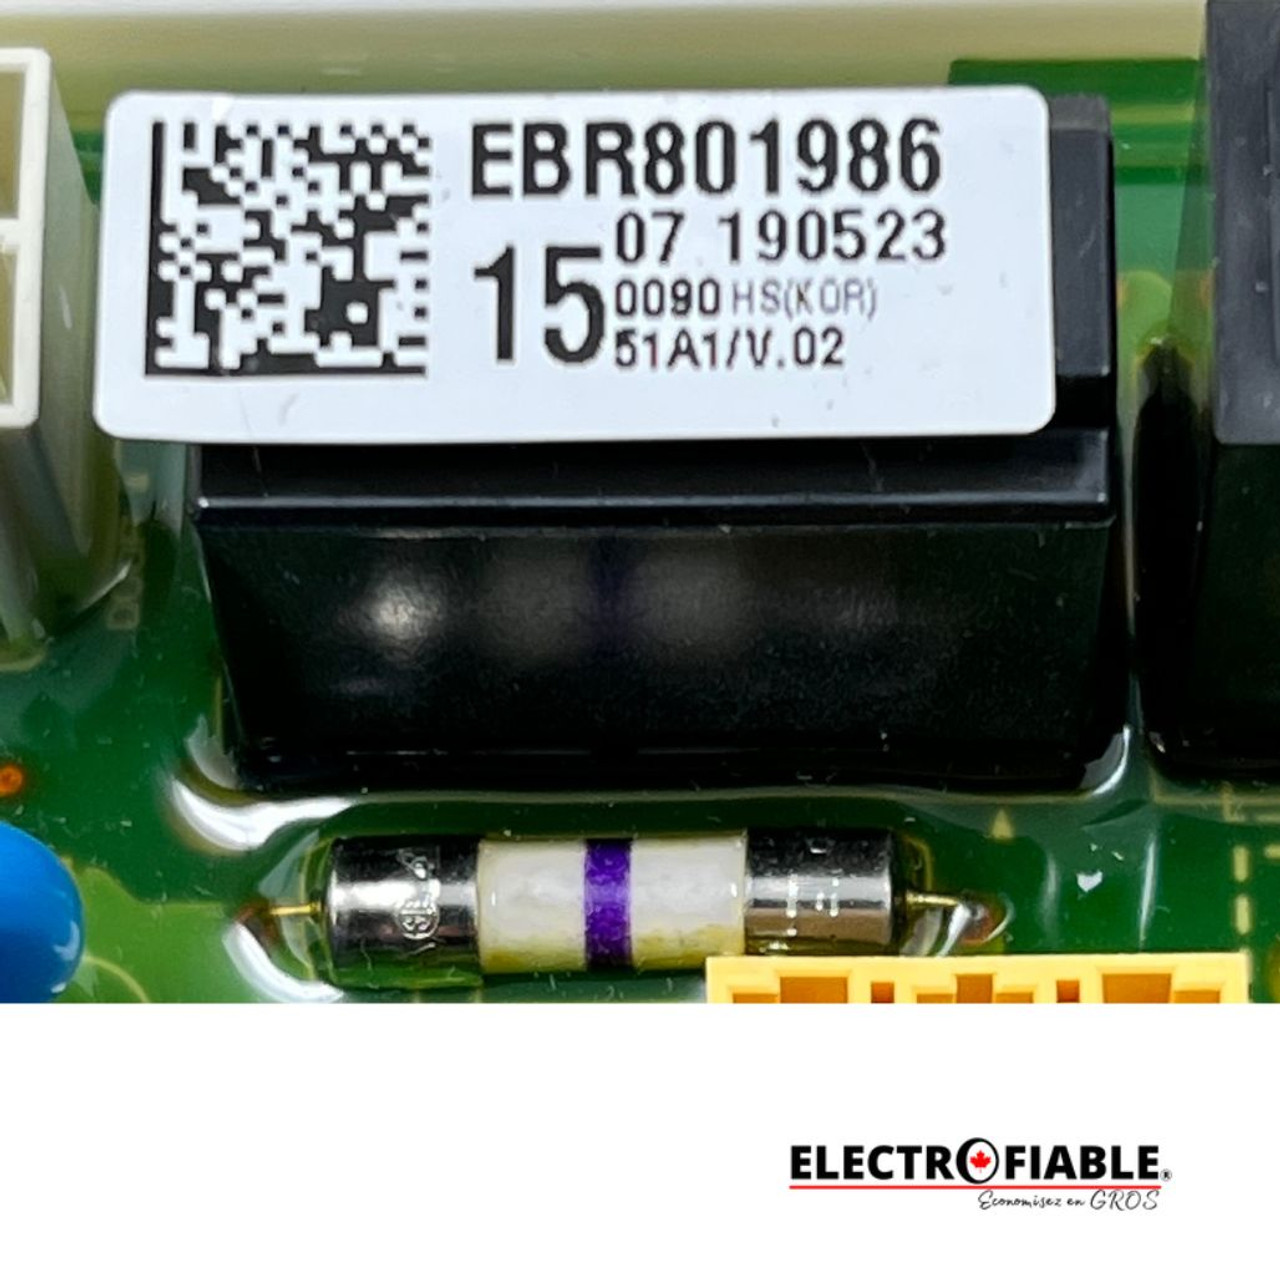 EBR80198615 Main Pcb For LG Dryer